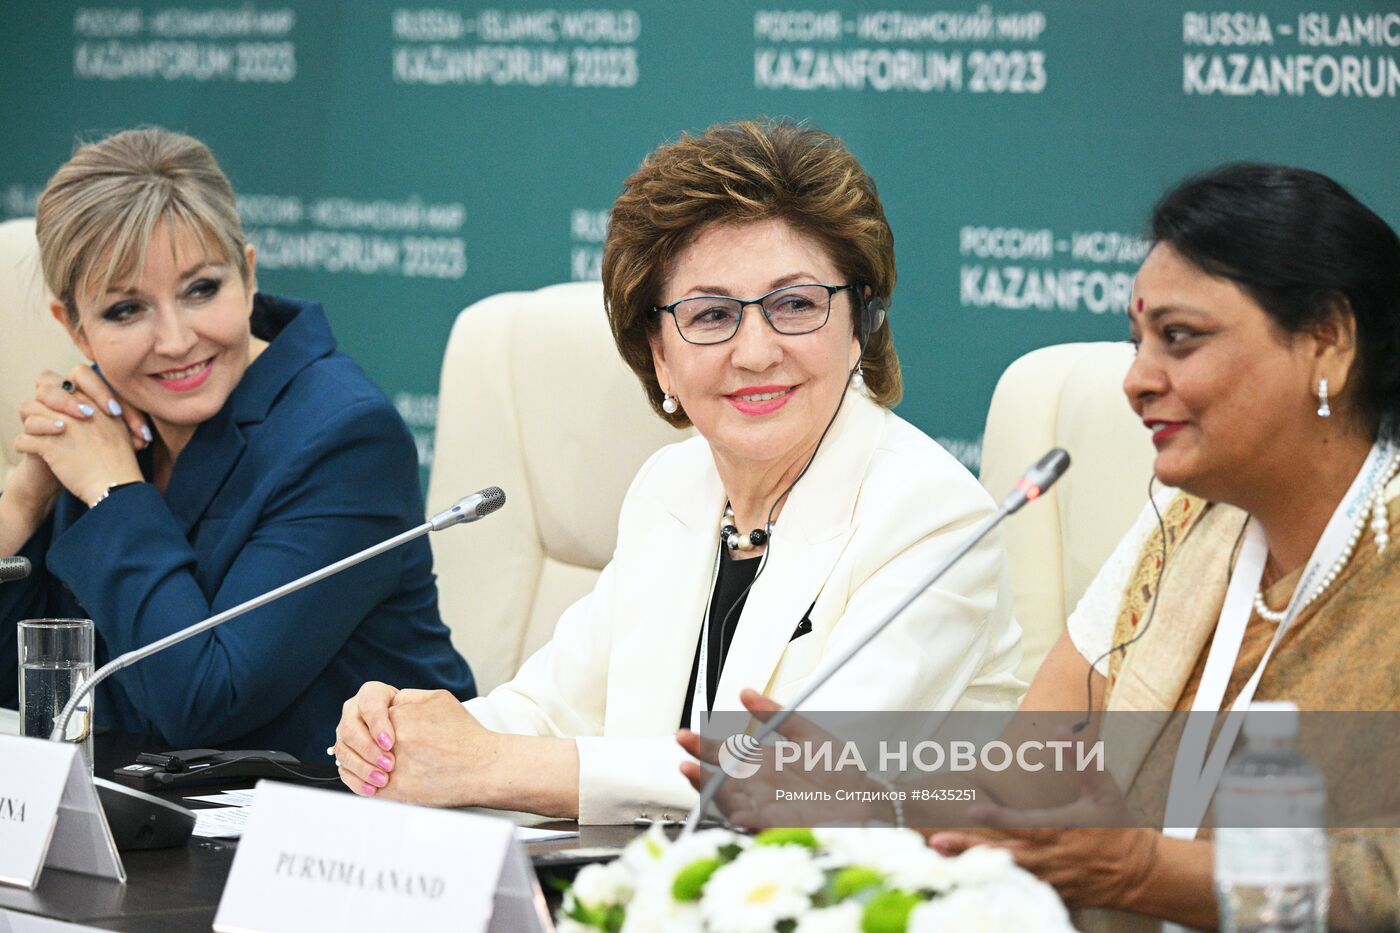 KAZANFORUM 2023. Пресс-конференция "Женская энергия: во имя добра и благополучия"